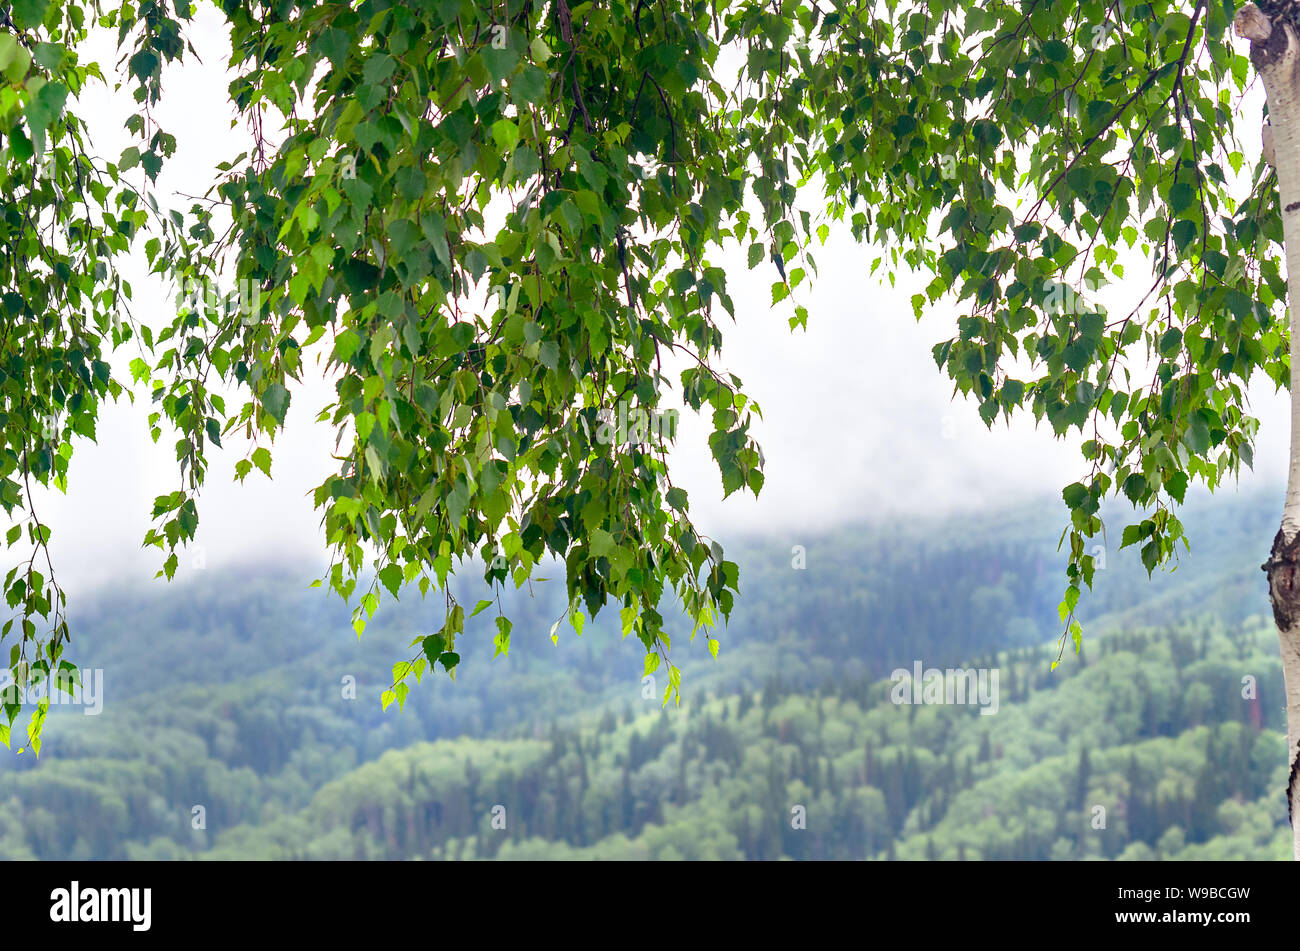 Les branches d'arbres de bouleau avec des feuilles vertes sur un matin brumeux de l'été. Arrière-plan flou de pente de montagne boisée avec des nuages bas qui coule. Banque D'Images